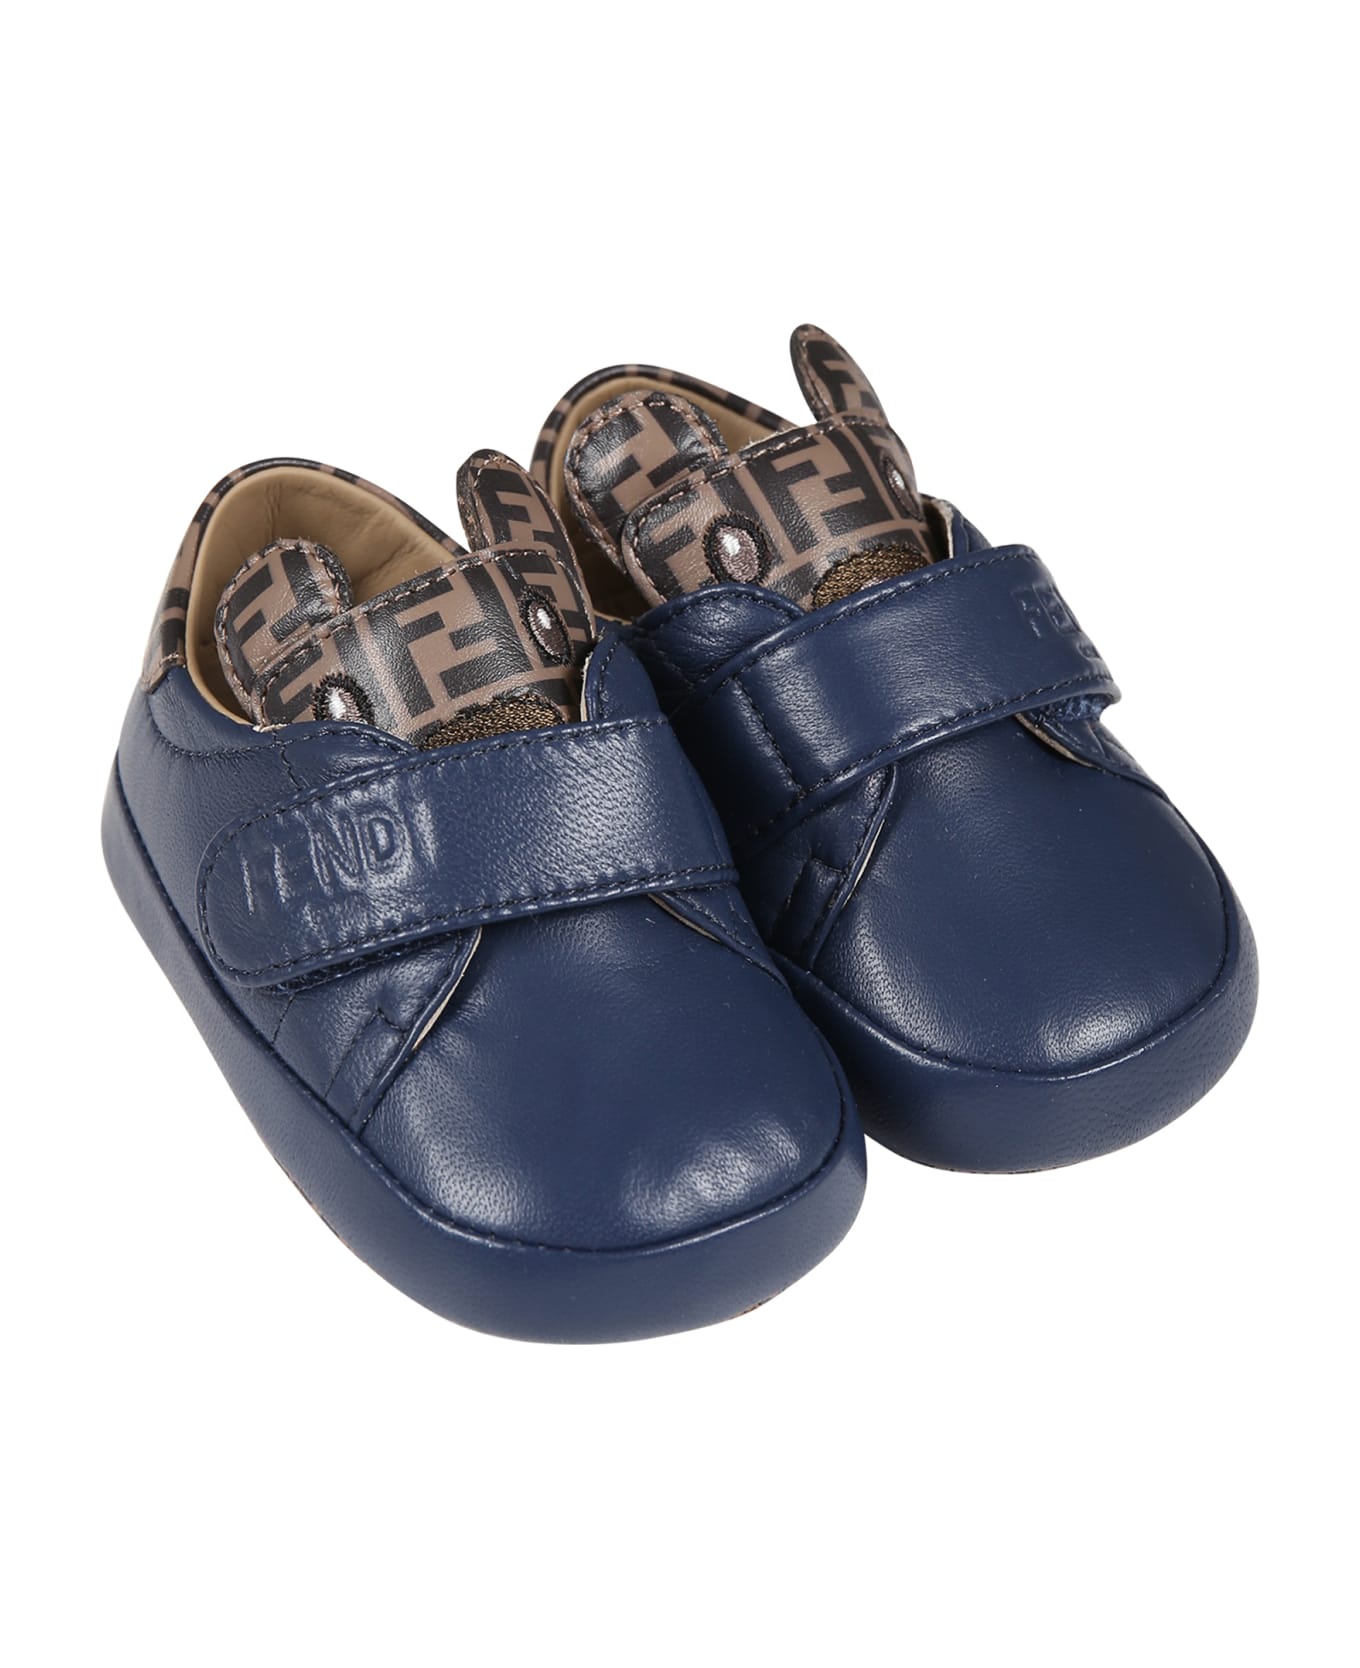 Fendi Blue Sneakers For Baby Boy - Blue シューズ